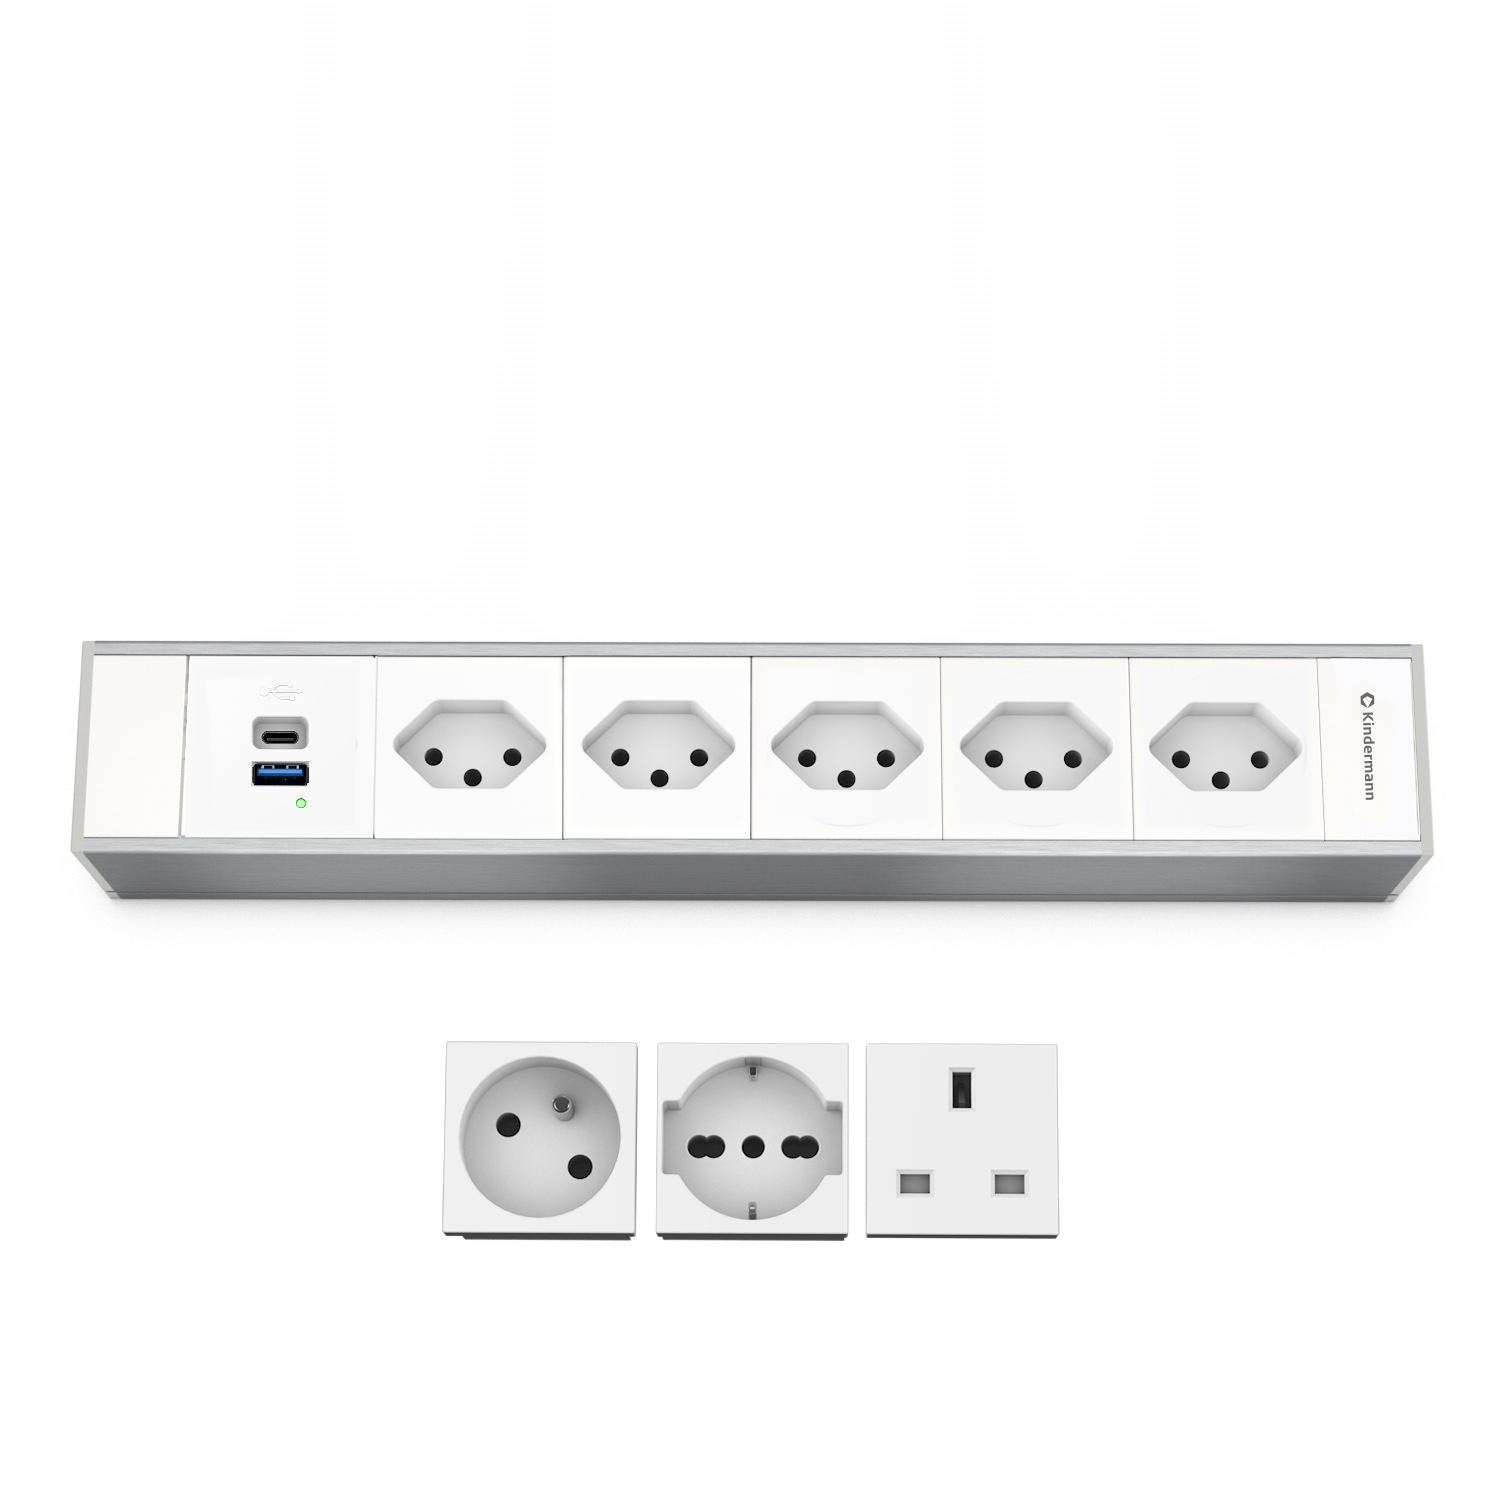 Kindermann Modulträger 6-fach 5xStrom INT - 1x USB-A / 1x USB-C - Tischanschlussfeld - Aluminium natur - eloxiert